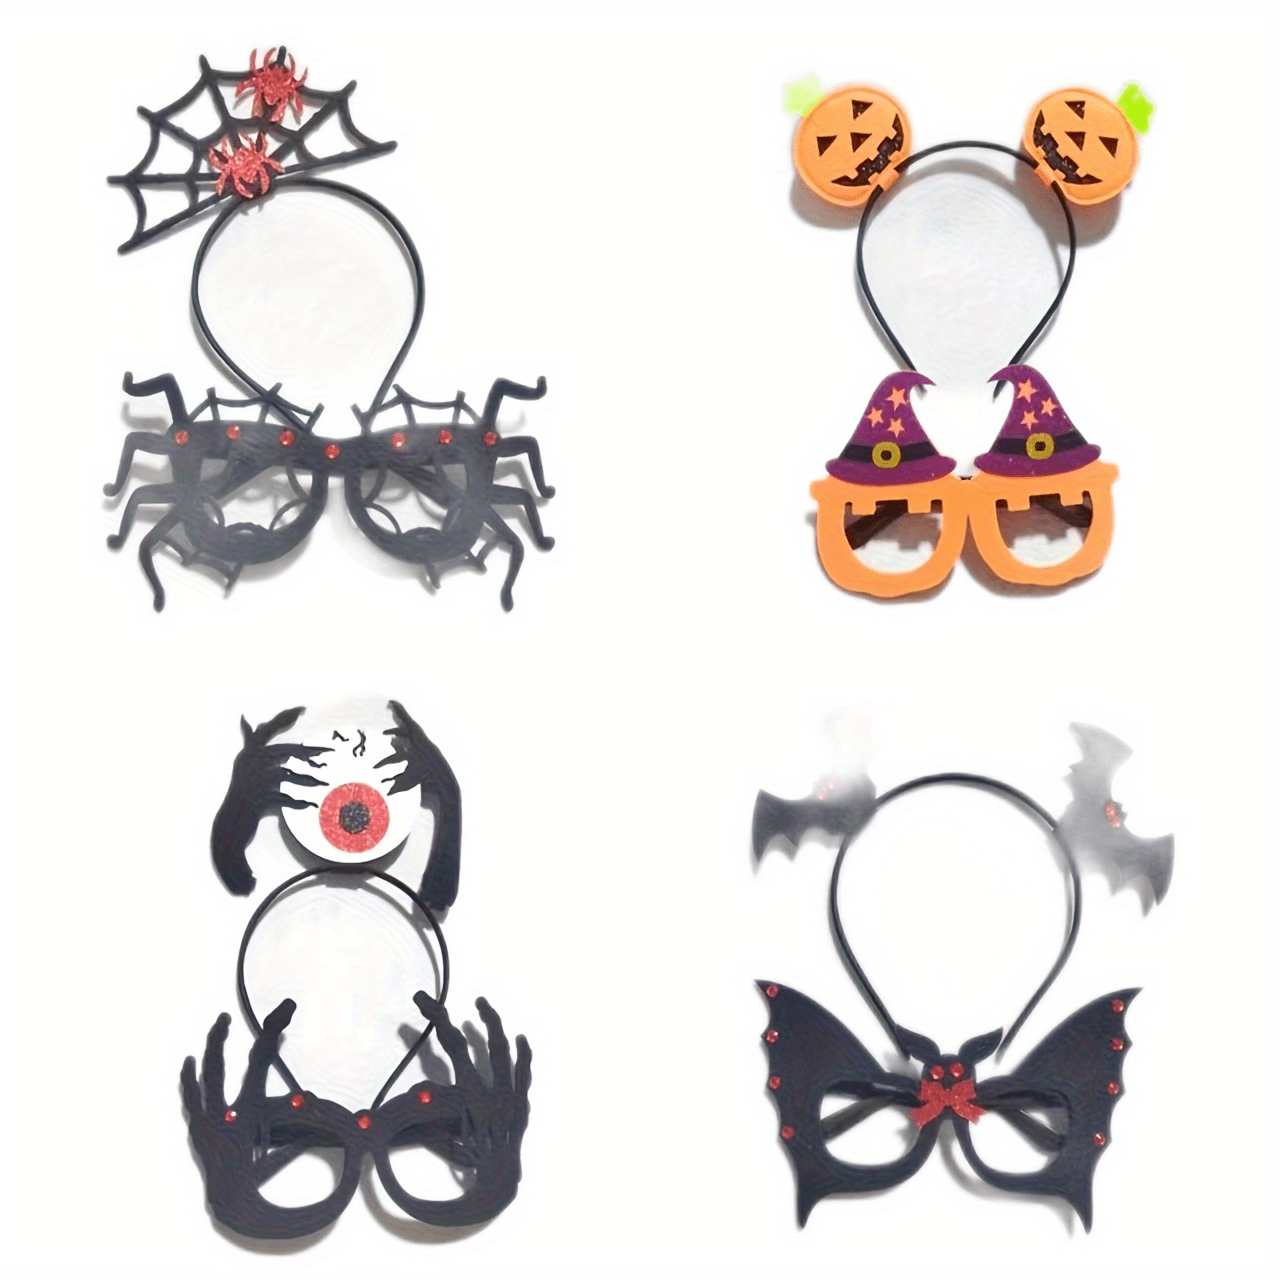 7 ideas de Arco y flecha cup  halloween disfraces, decoración de unas,  manualidades